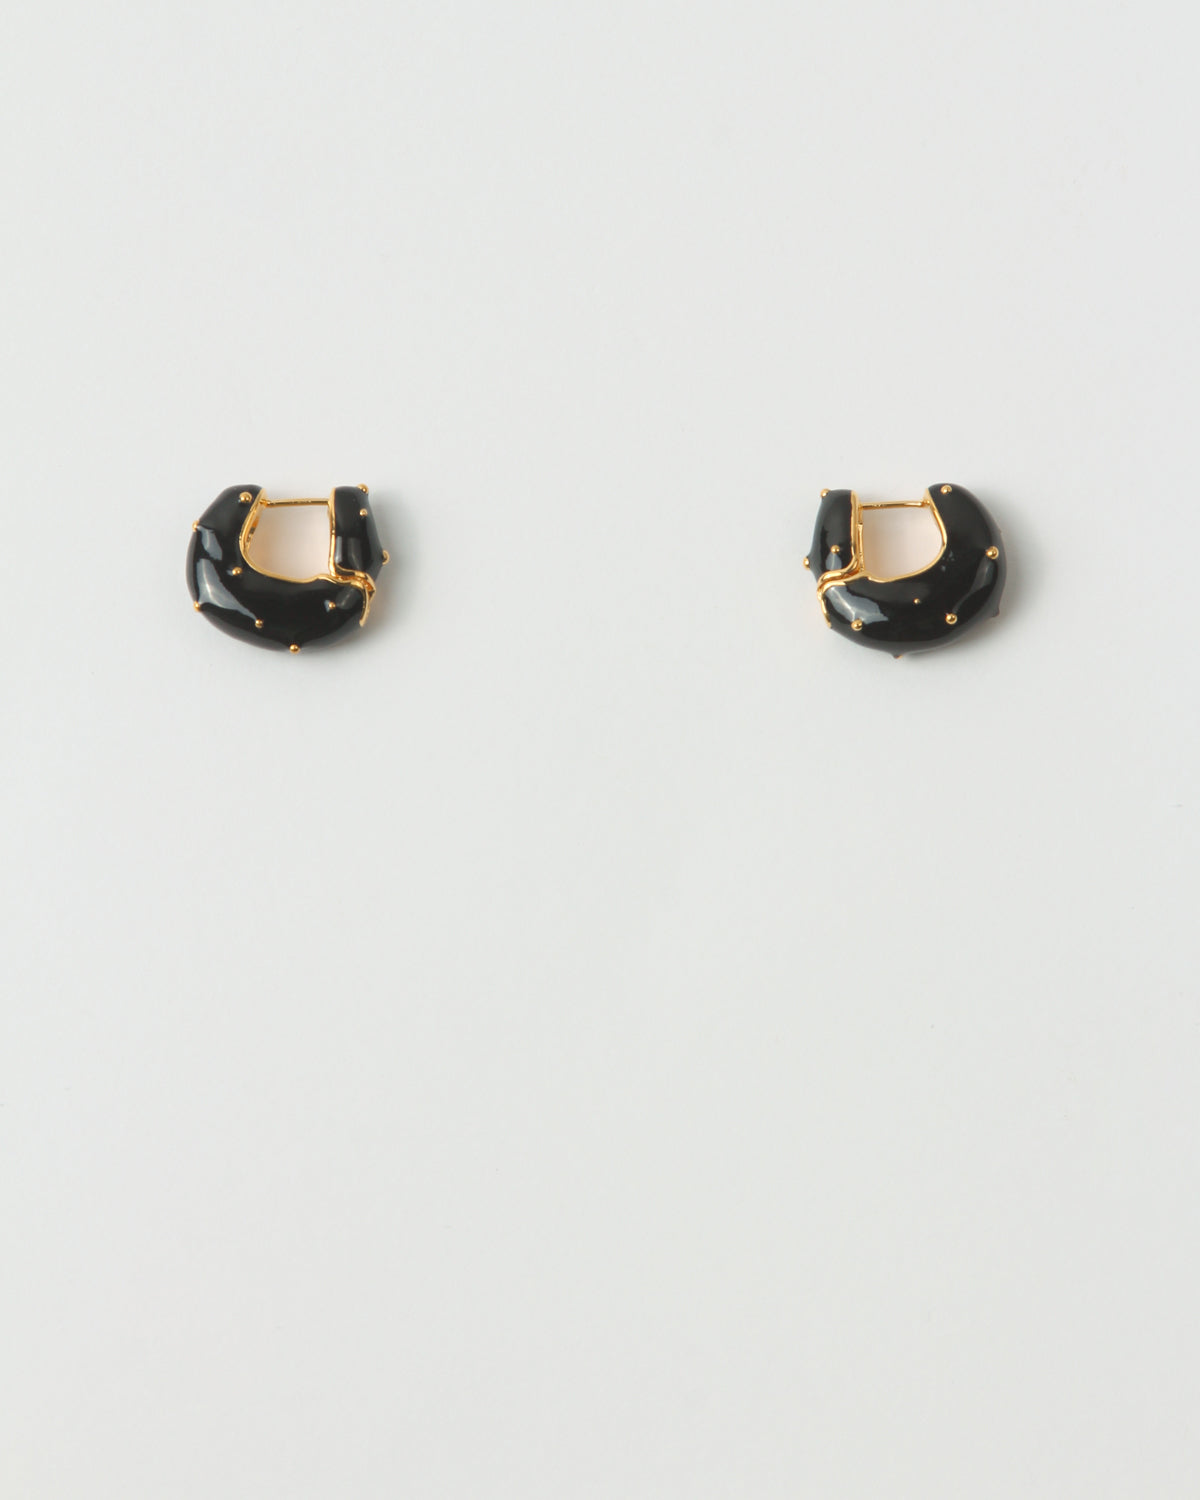 Iris Hoop Earrings Gold Plated and Enamel